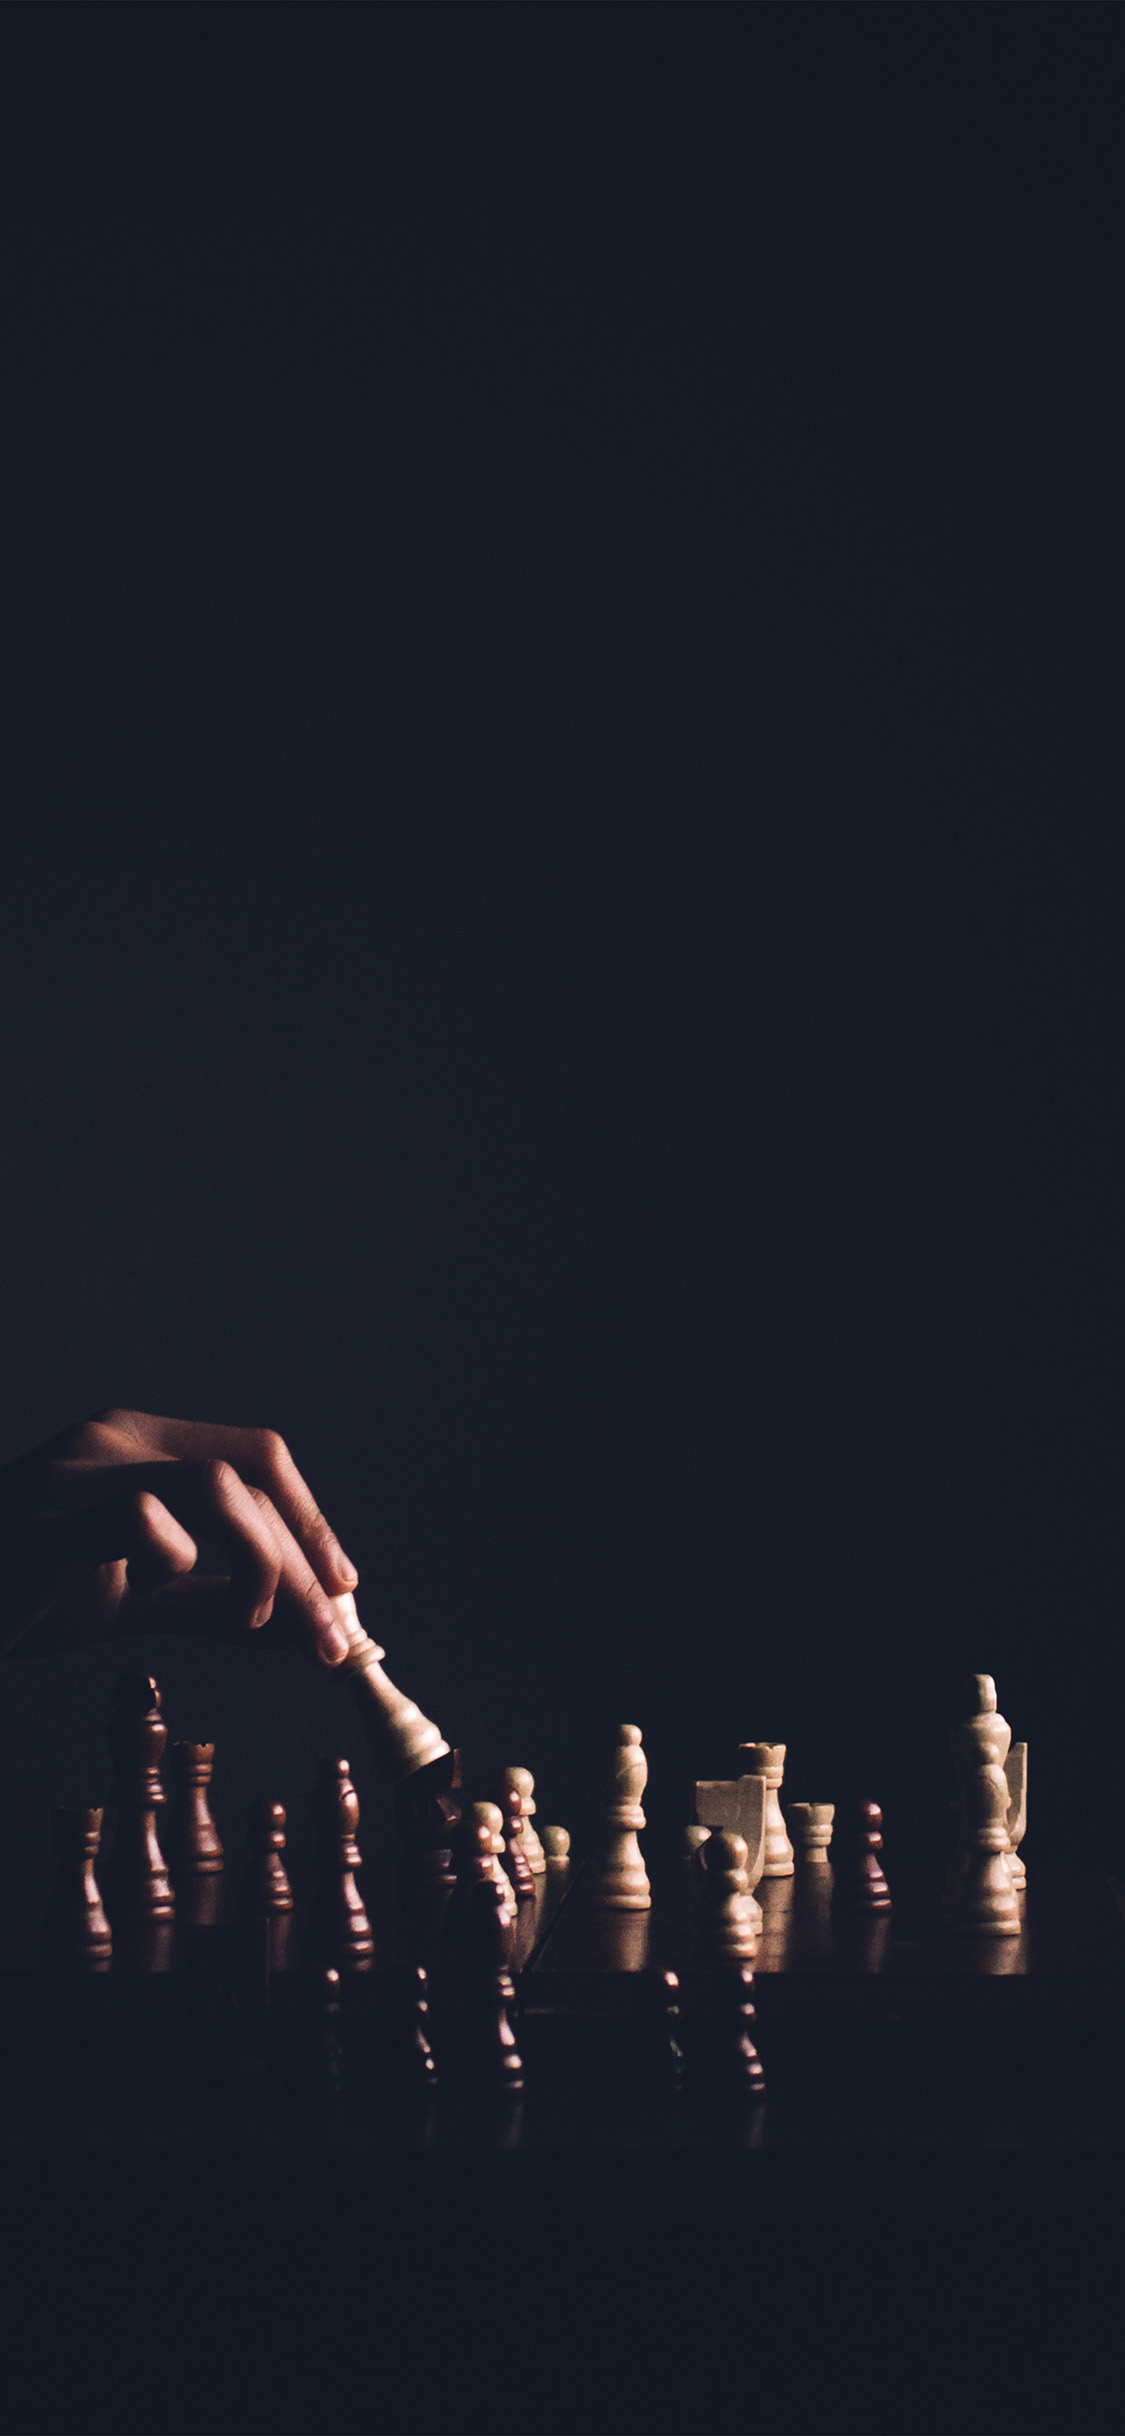 iPhone X wallpaper. chess dark game nature